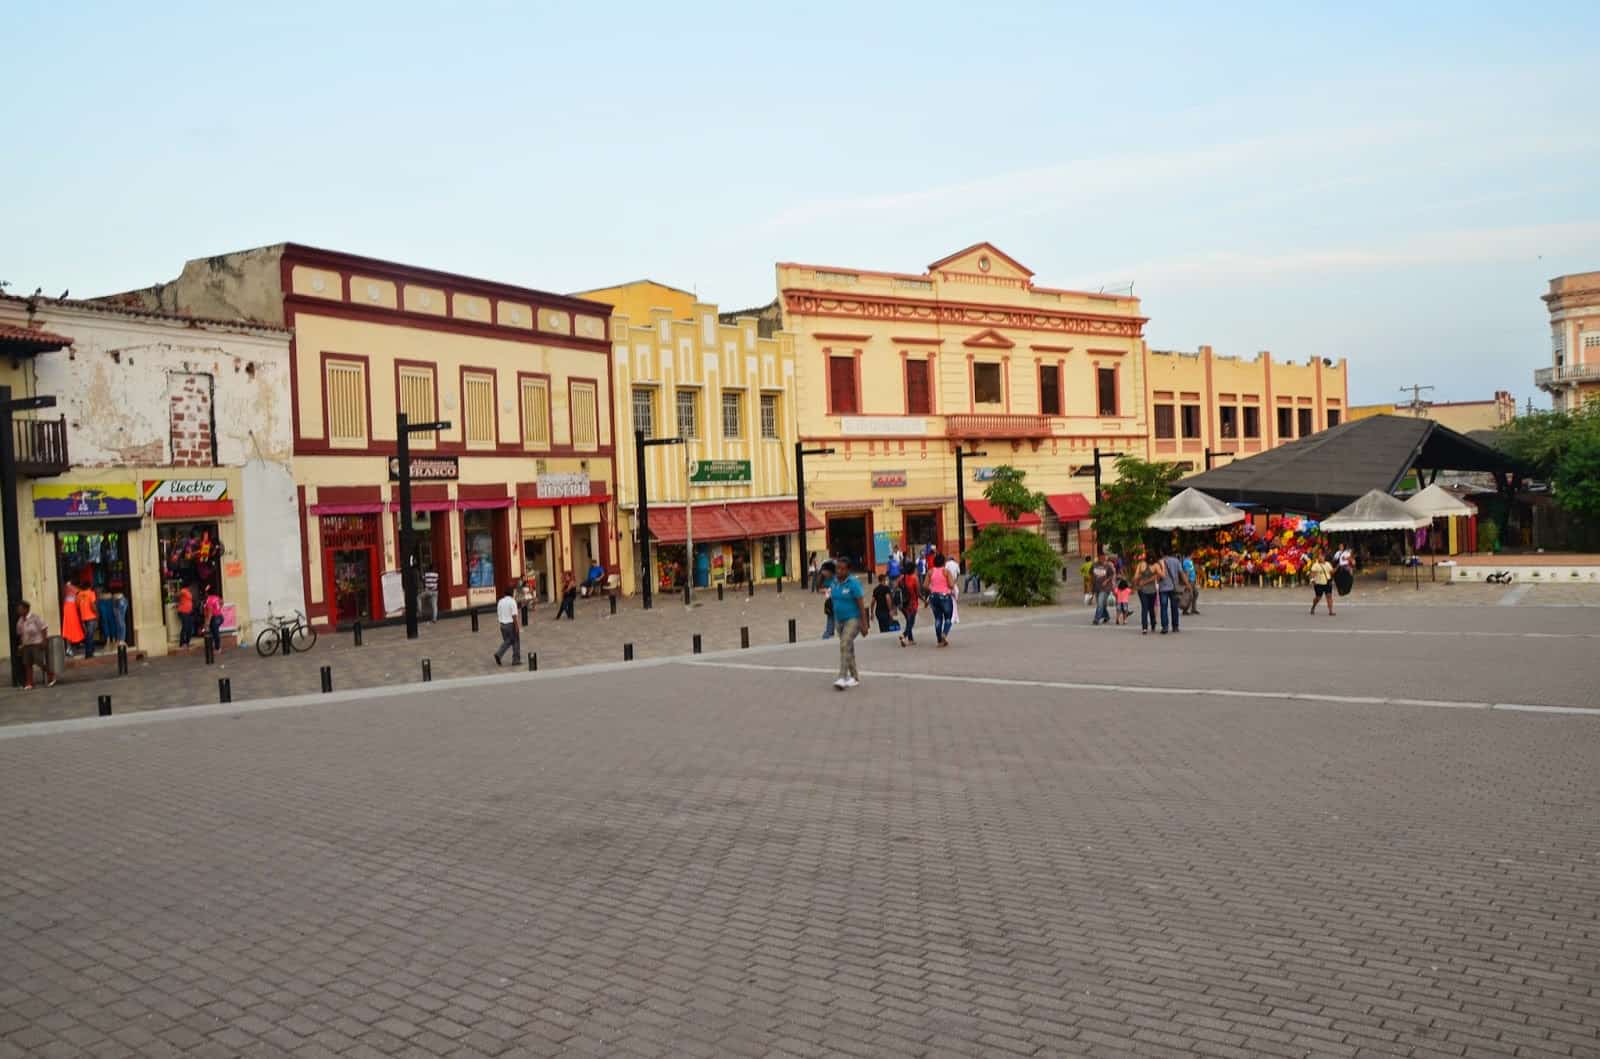 Plaza de San Nicolás in Barranquilla, Atlántico, Colombia